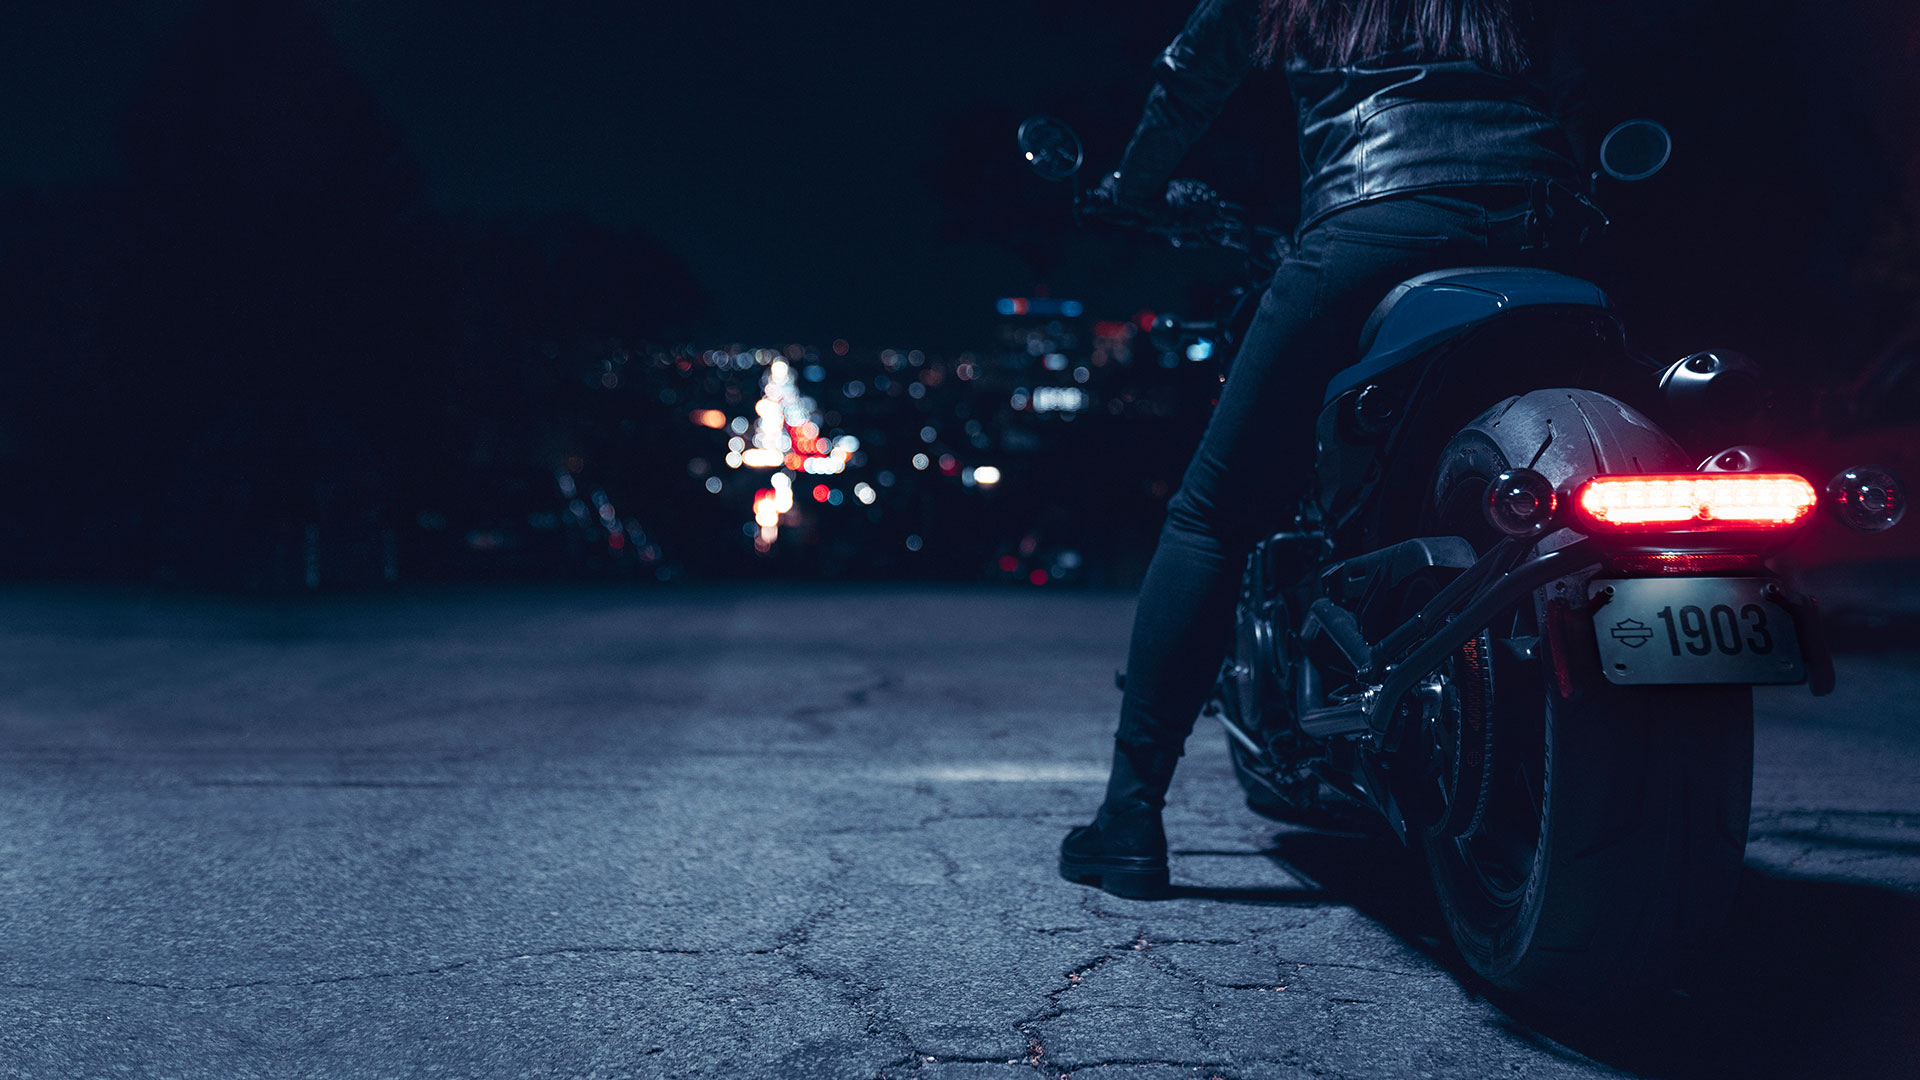 Giá xe HarleyDavidson Sportster S 2021 chính thức được công bố Motosaigon